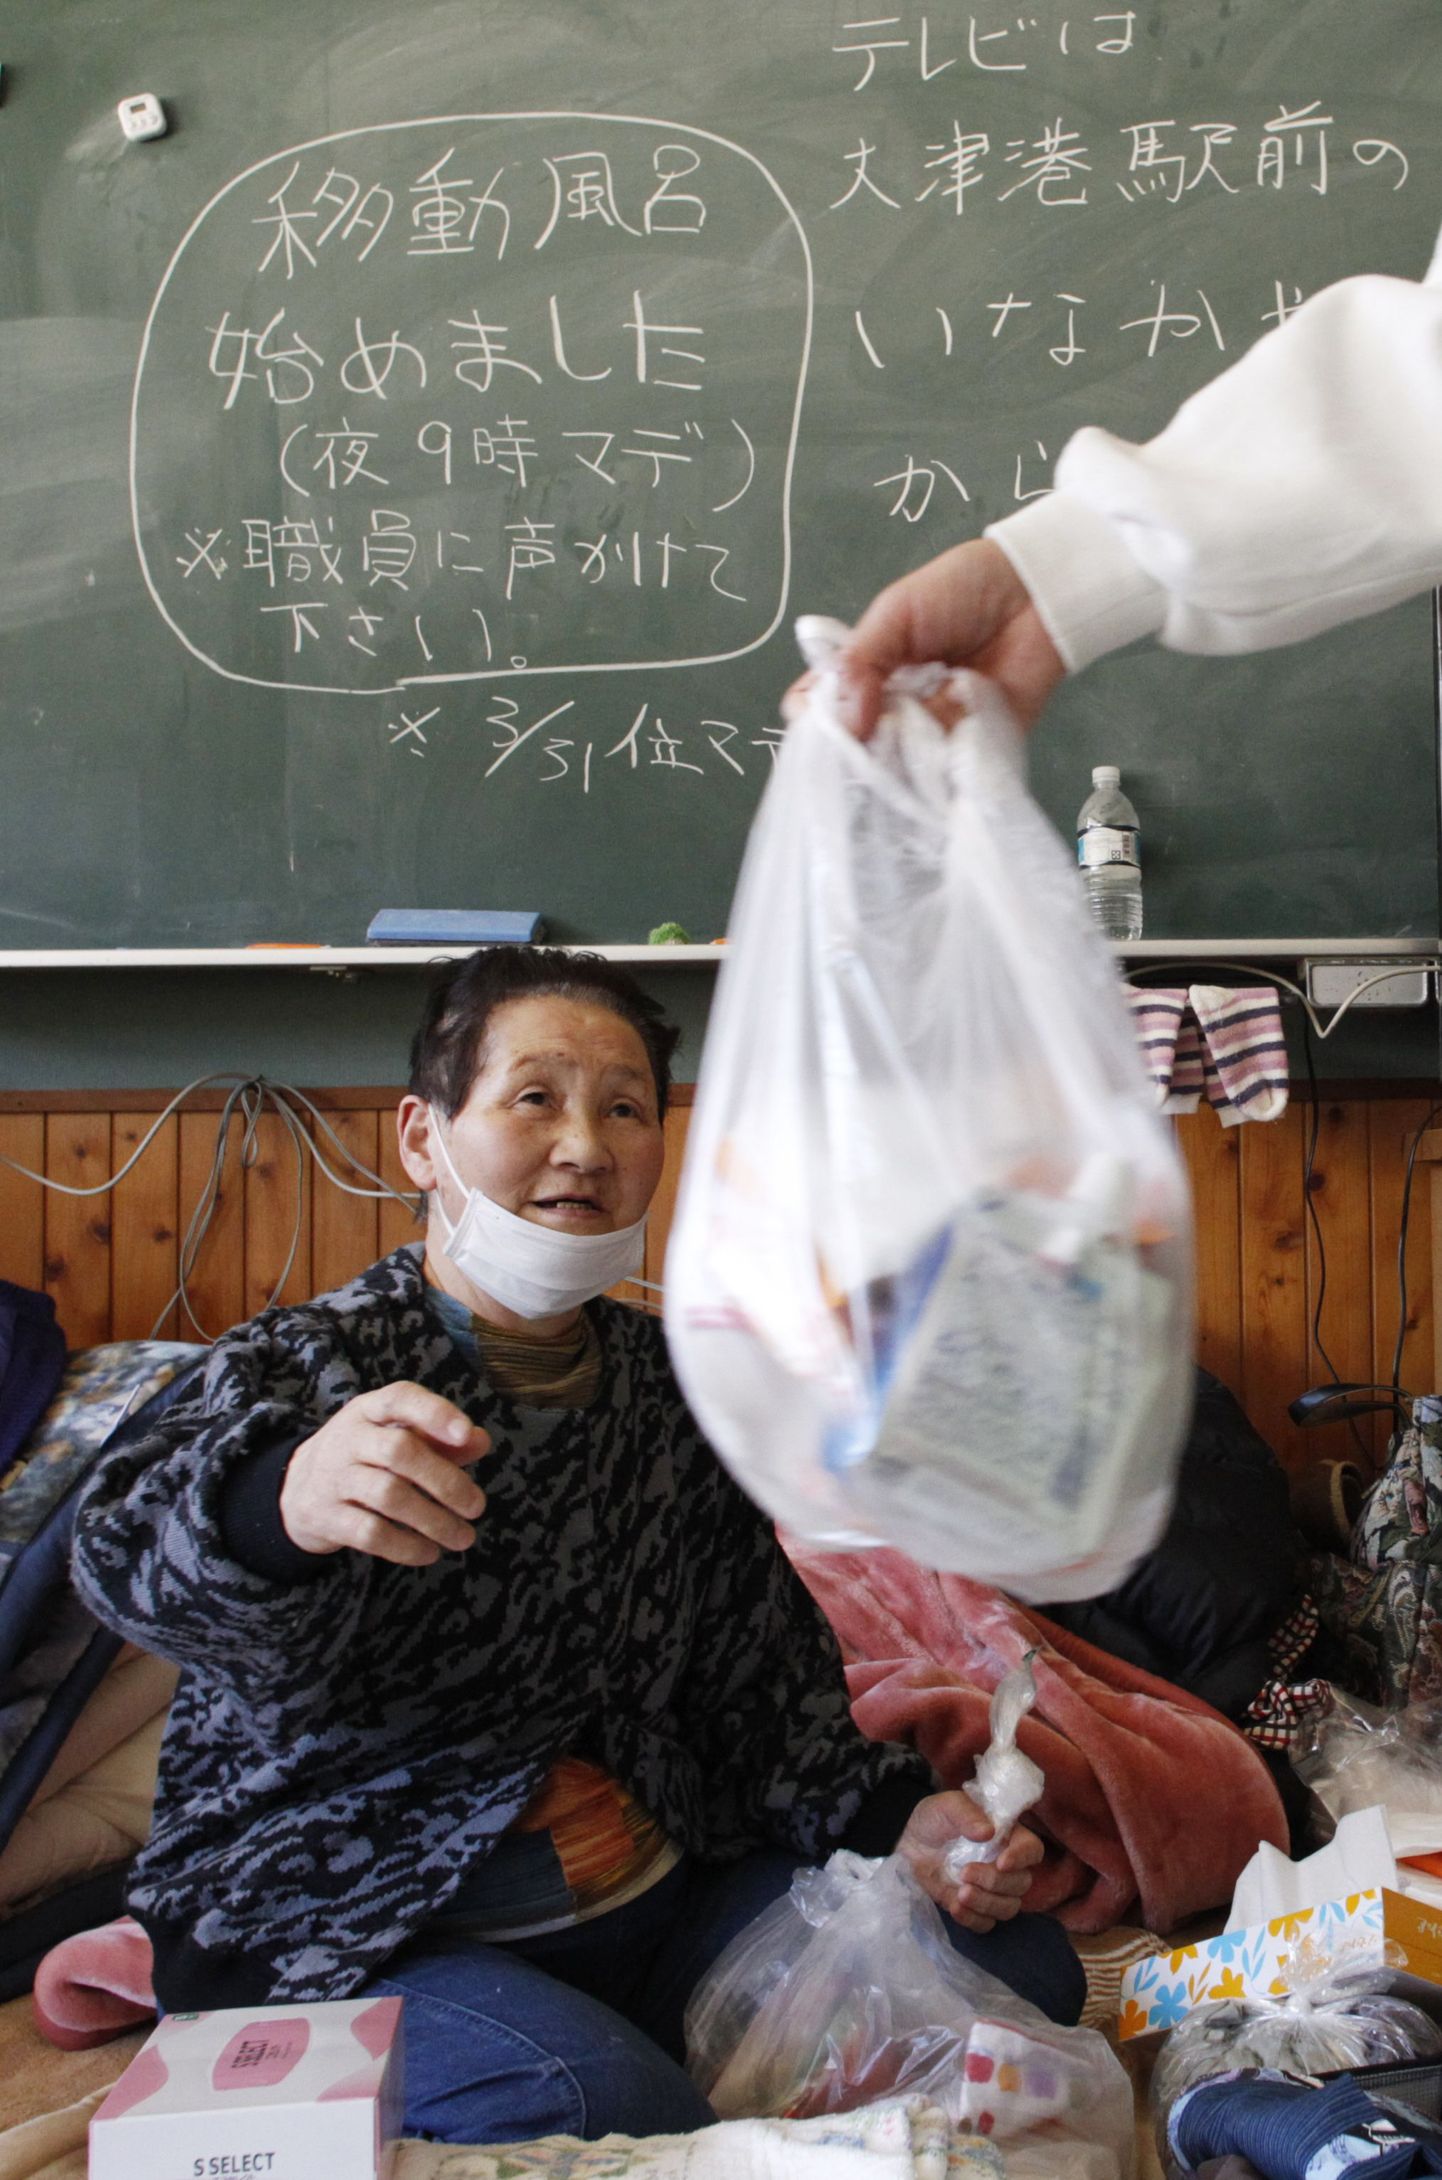 Meditsiinitöötaja ulatamas ravimeid eakale jaapanlannale, kes elab Otsu algkoolis asuvas evakuatsioonikeskuses